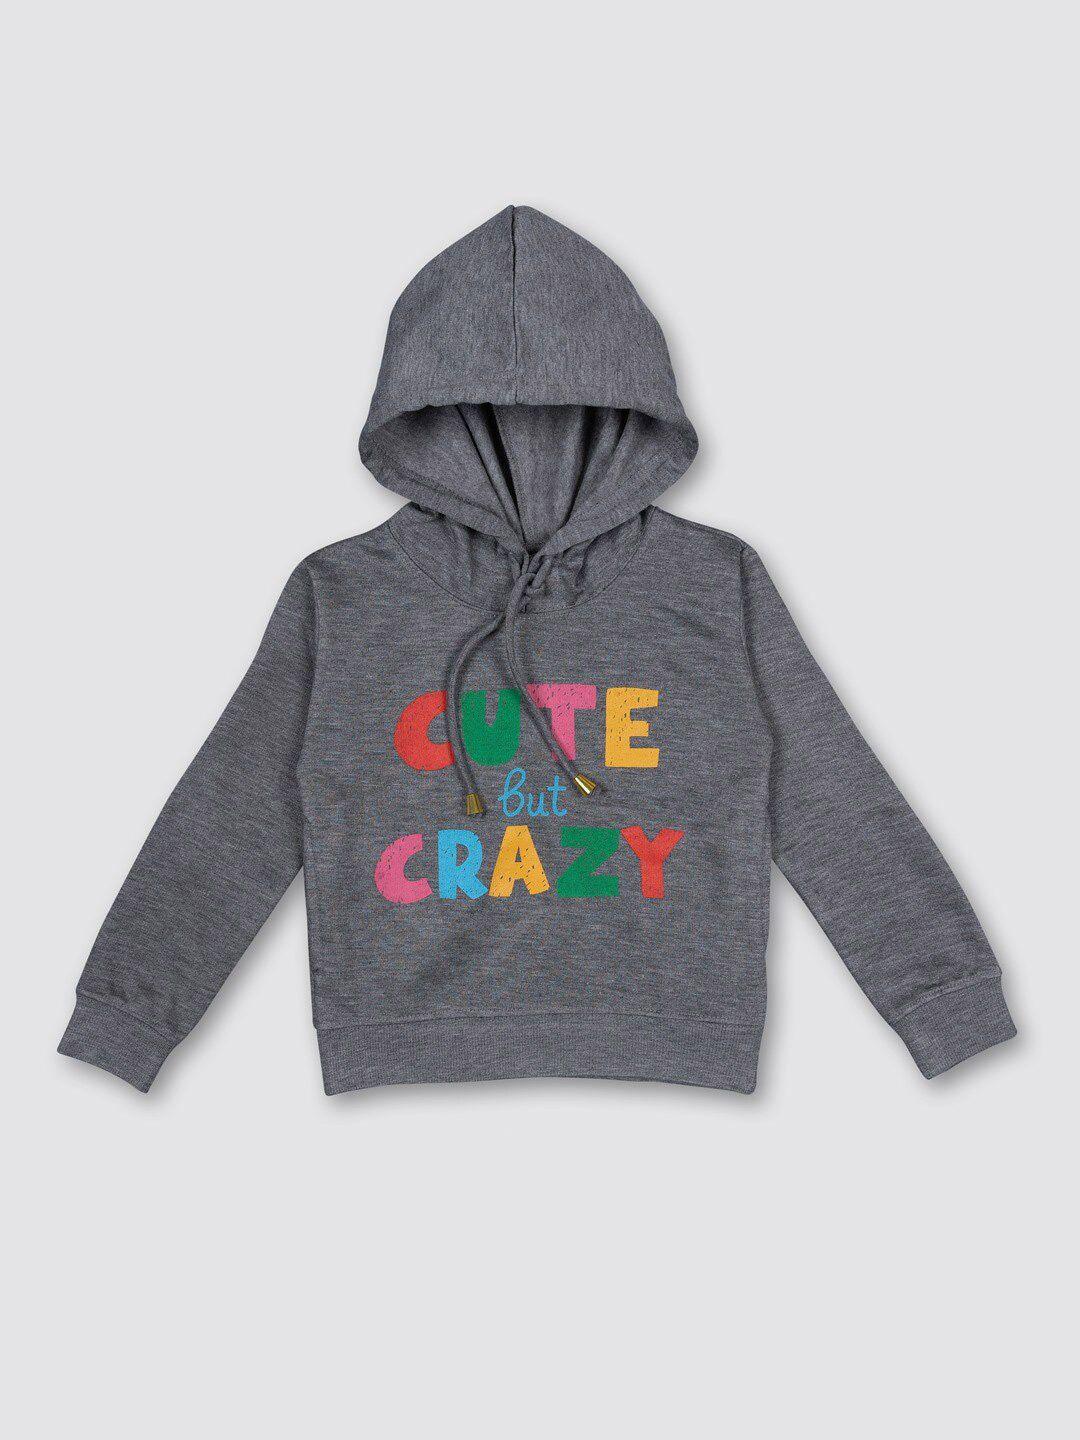 myy kids grey printed hooded fleece sweatshirt